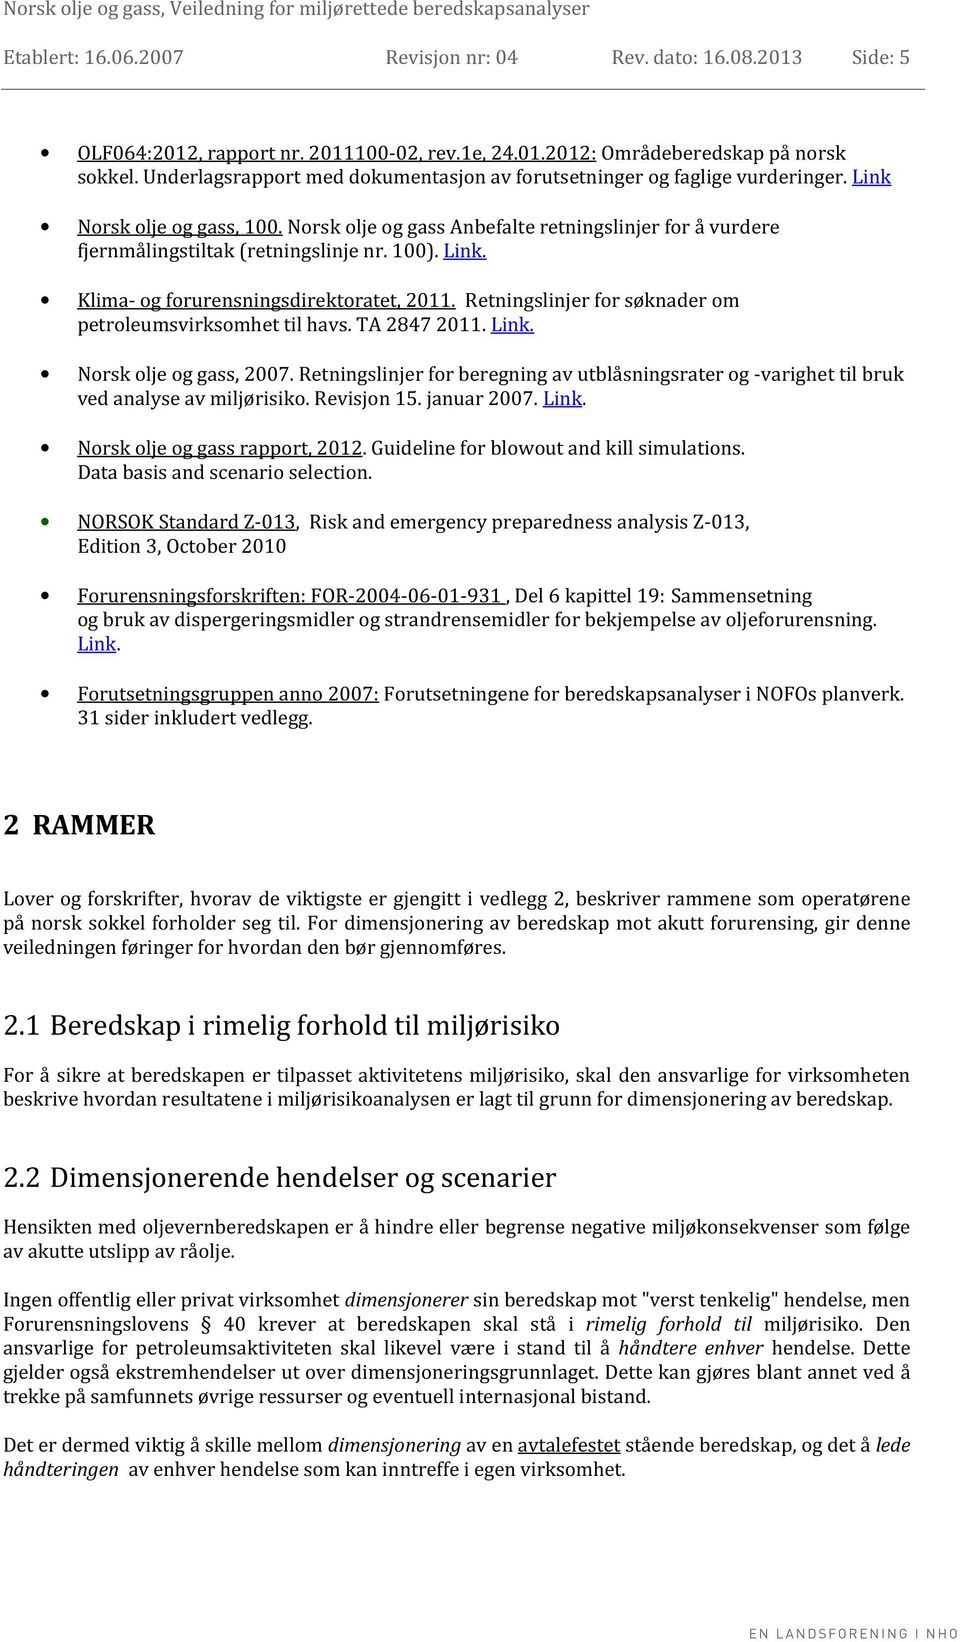 Norsk olje og gass Anbefalte retningslinjer for å vurdere fjernmålingstiltak (retningslinje nr. 100). Link. Klima- og forurensningsdirektoratet, 2011.